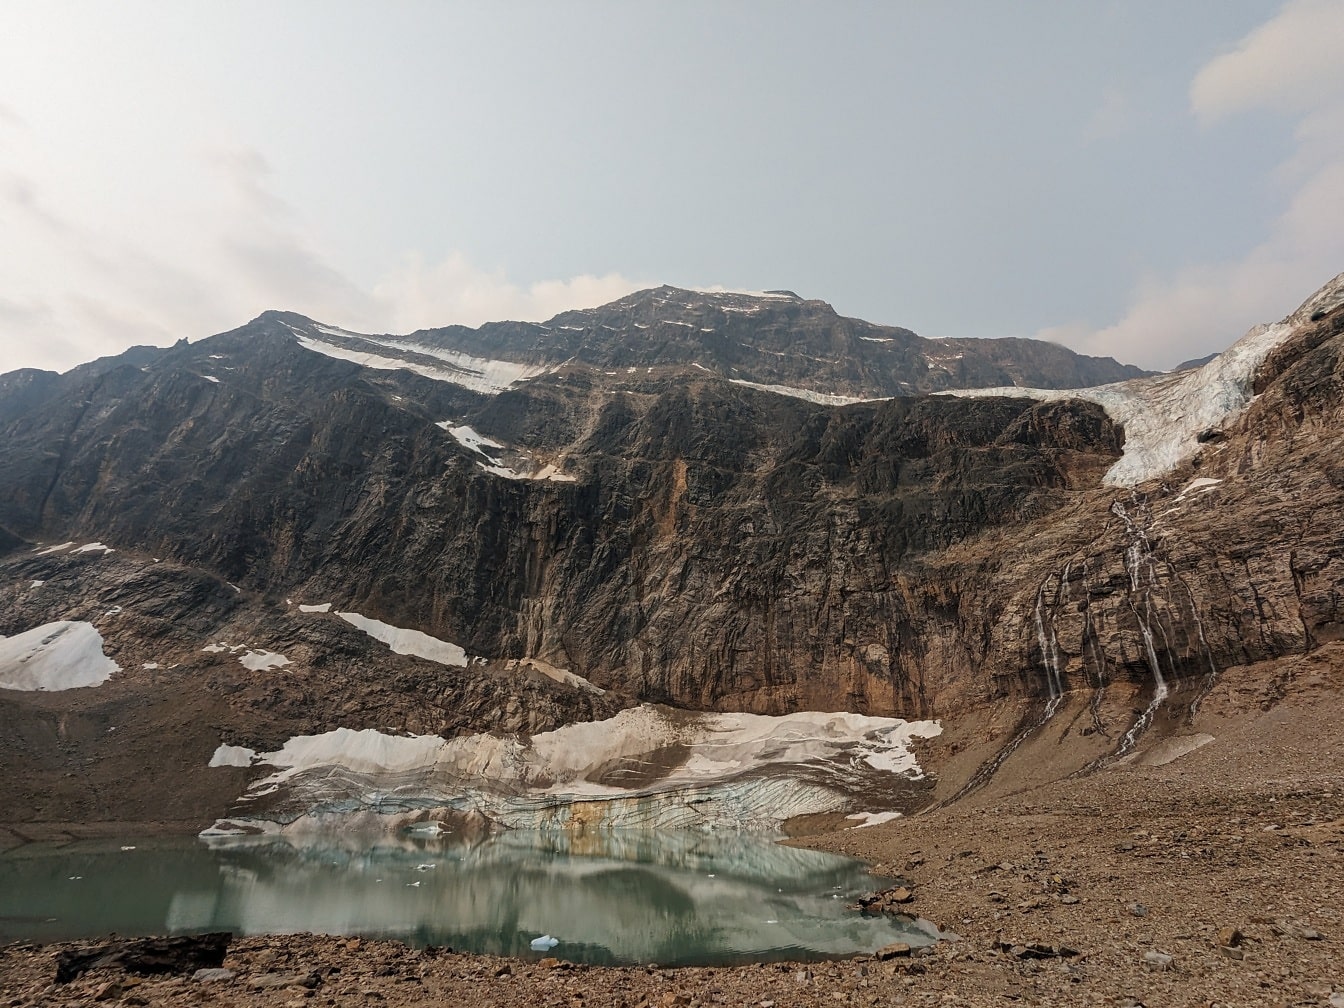 Derretimento da geleira no lago Monte Edith Cavell parque nacional panorâmico